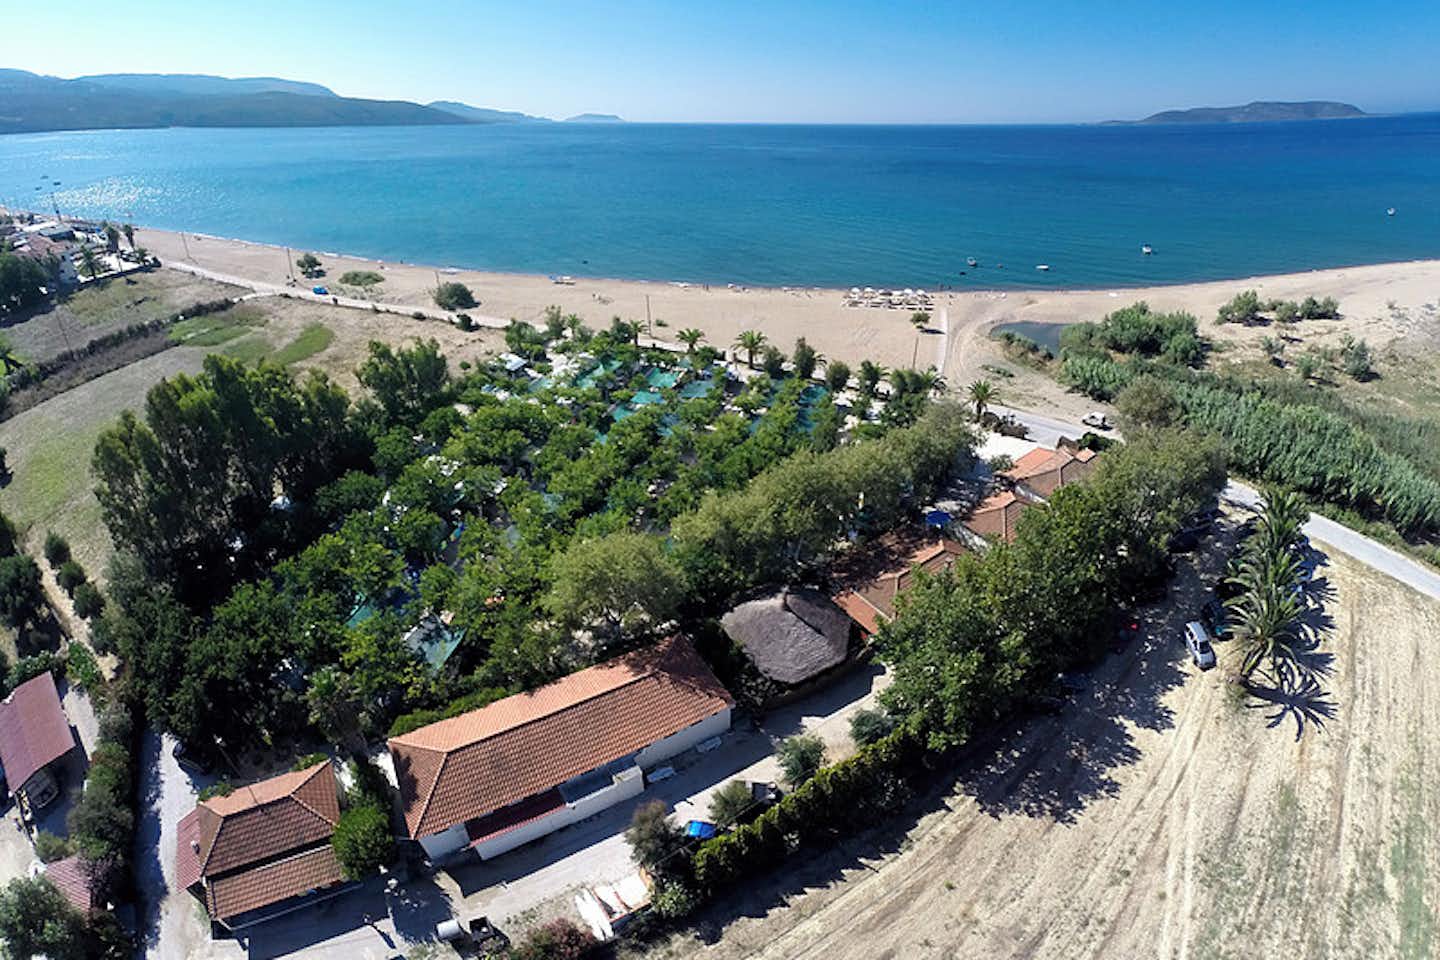 Camping Thines - Vogelperspektive auf den Campingplatz mit dem Strand und dem Mittelmeer im Hintergrund